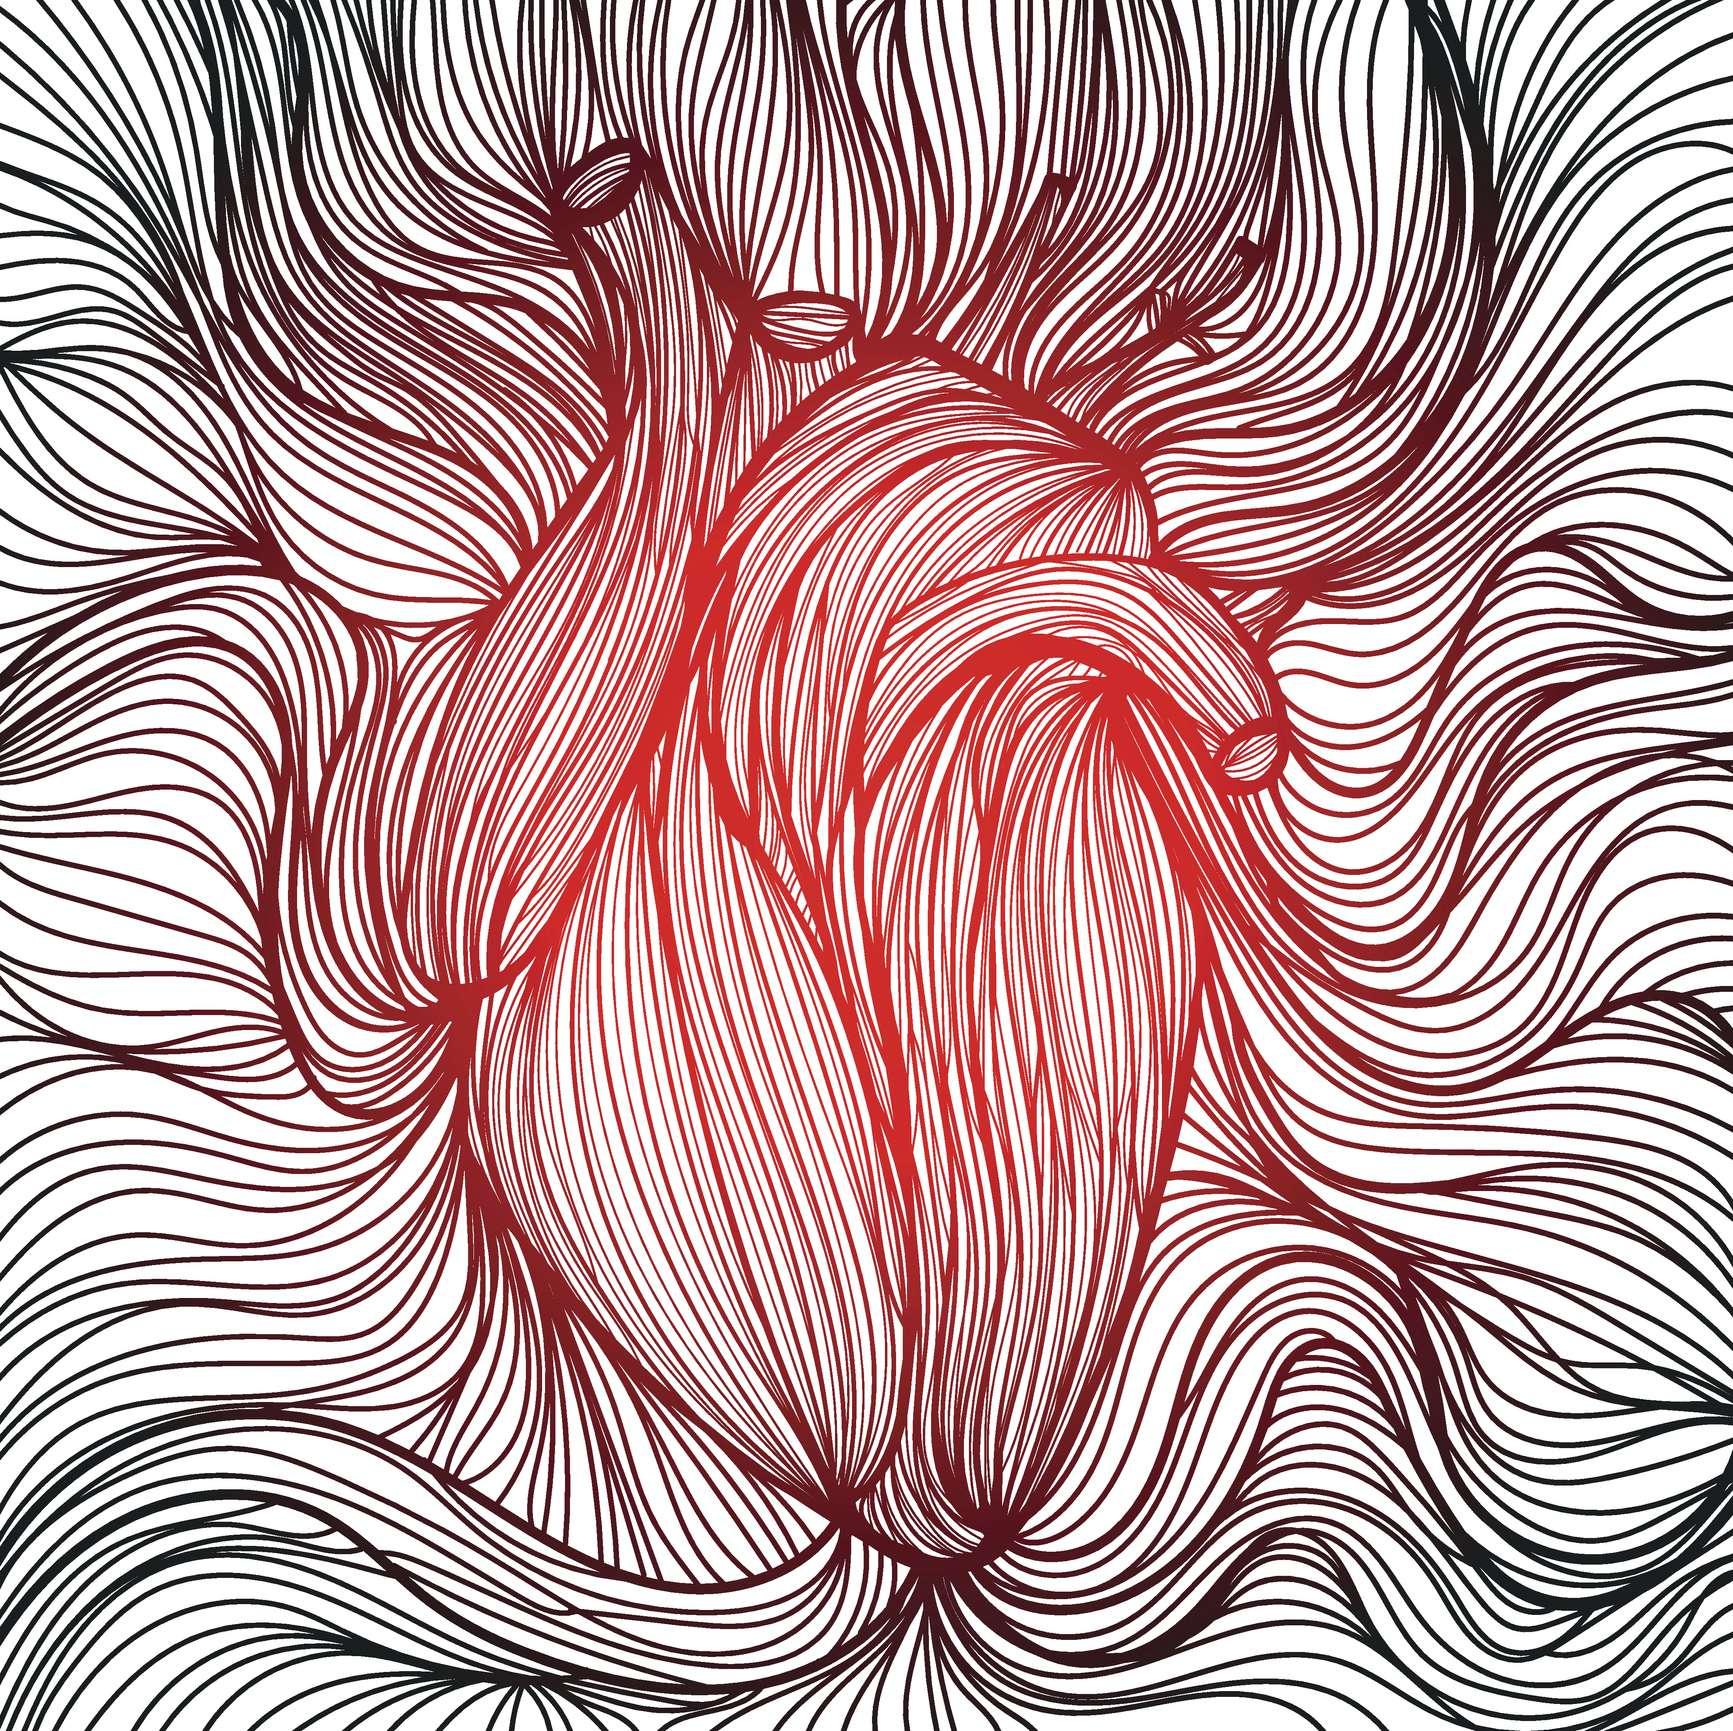 Vektorillustration eines gezeichneten aus vielen roten und schwarzen Linien anatomisches menschliches Herz auf weißem Hintergrund